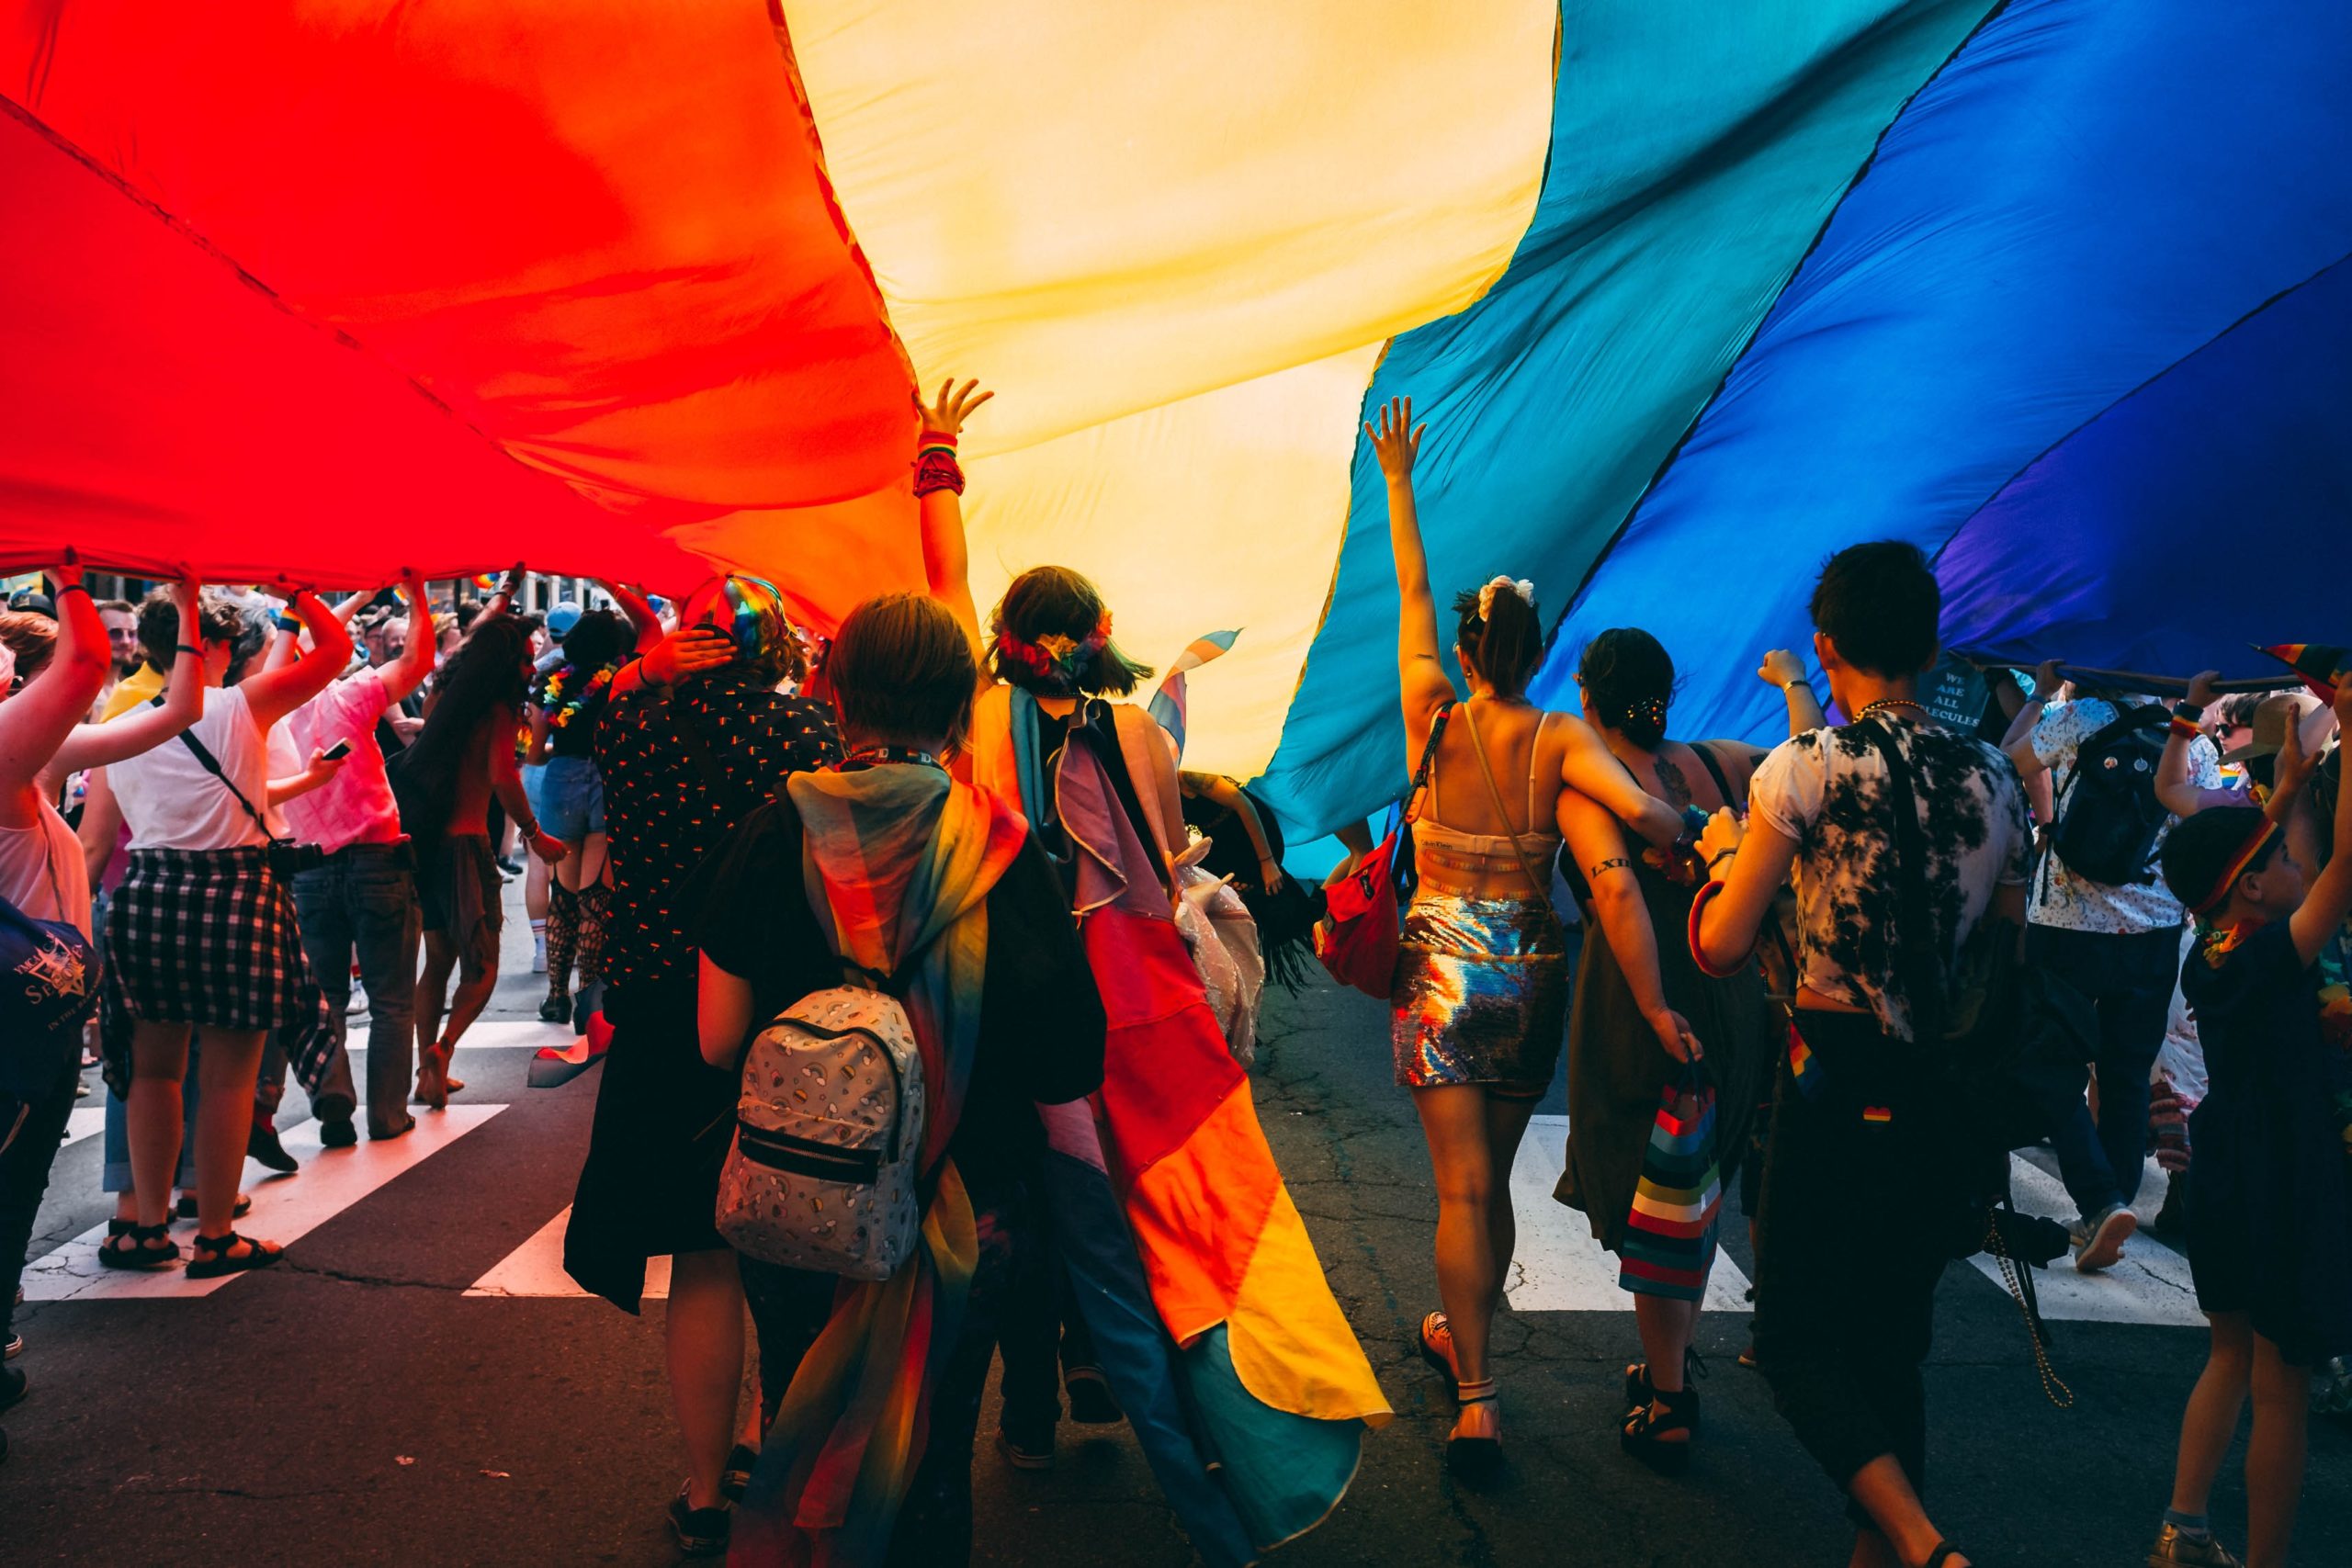 足立区議会の発言…「同性愛を認めたら区が滅んでしまう」に違和感を覚える理由